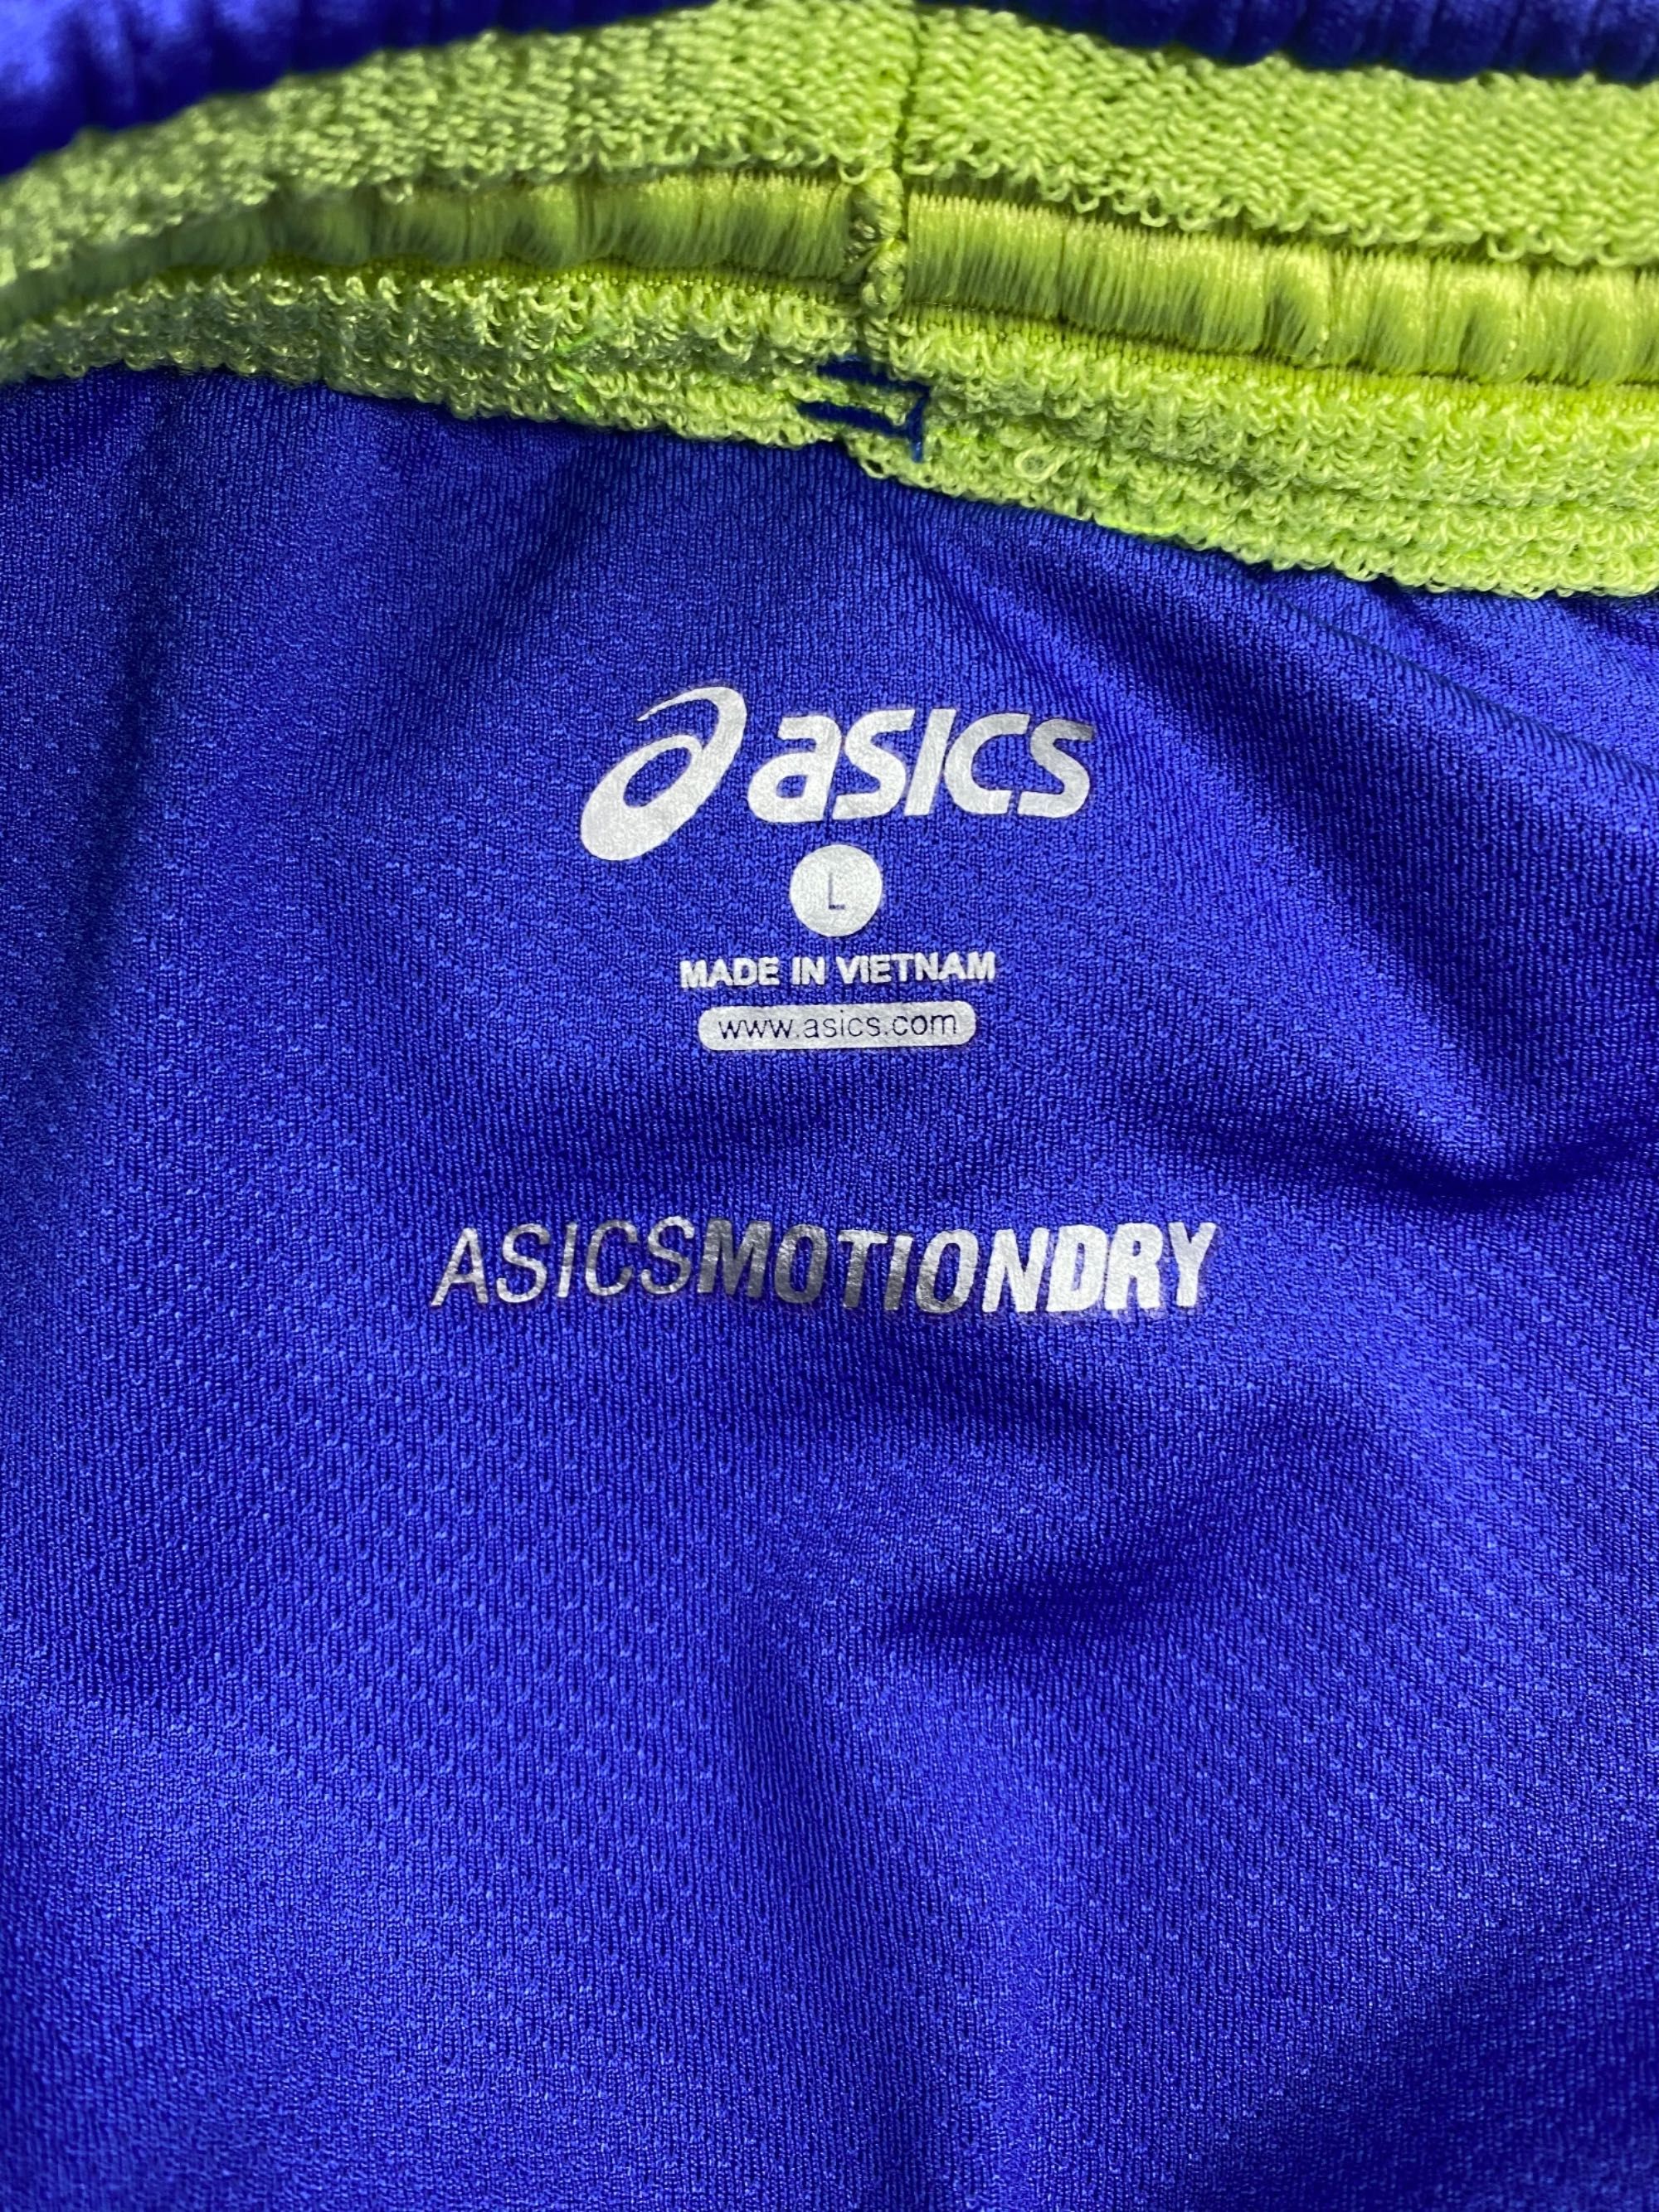 Asics motiondry шорты l размер беговые спортивные синее оригинал